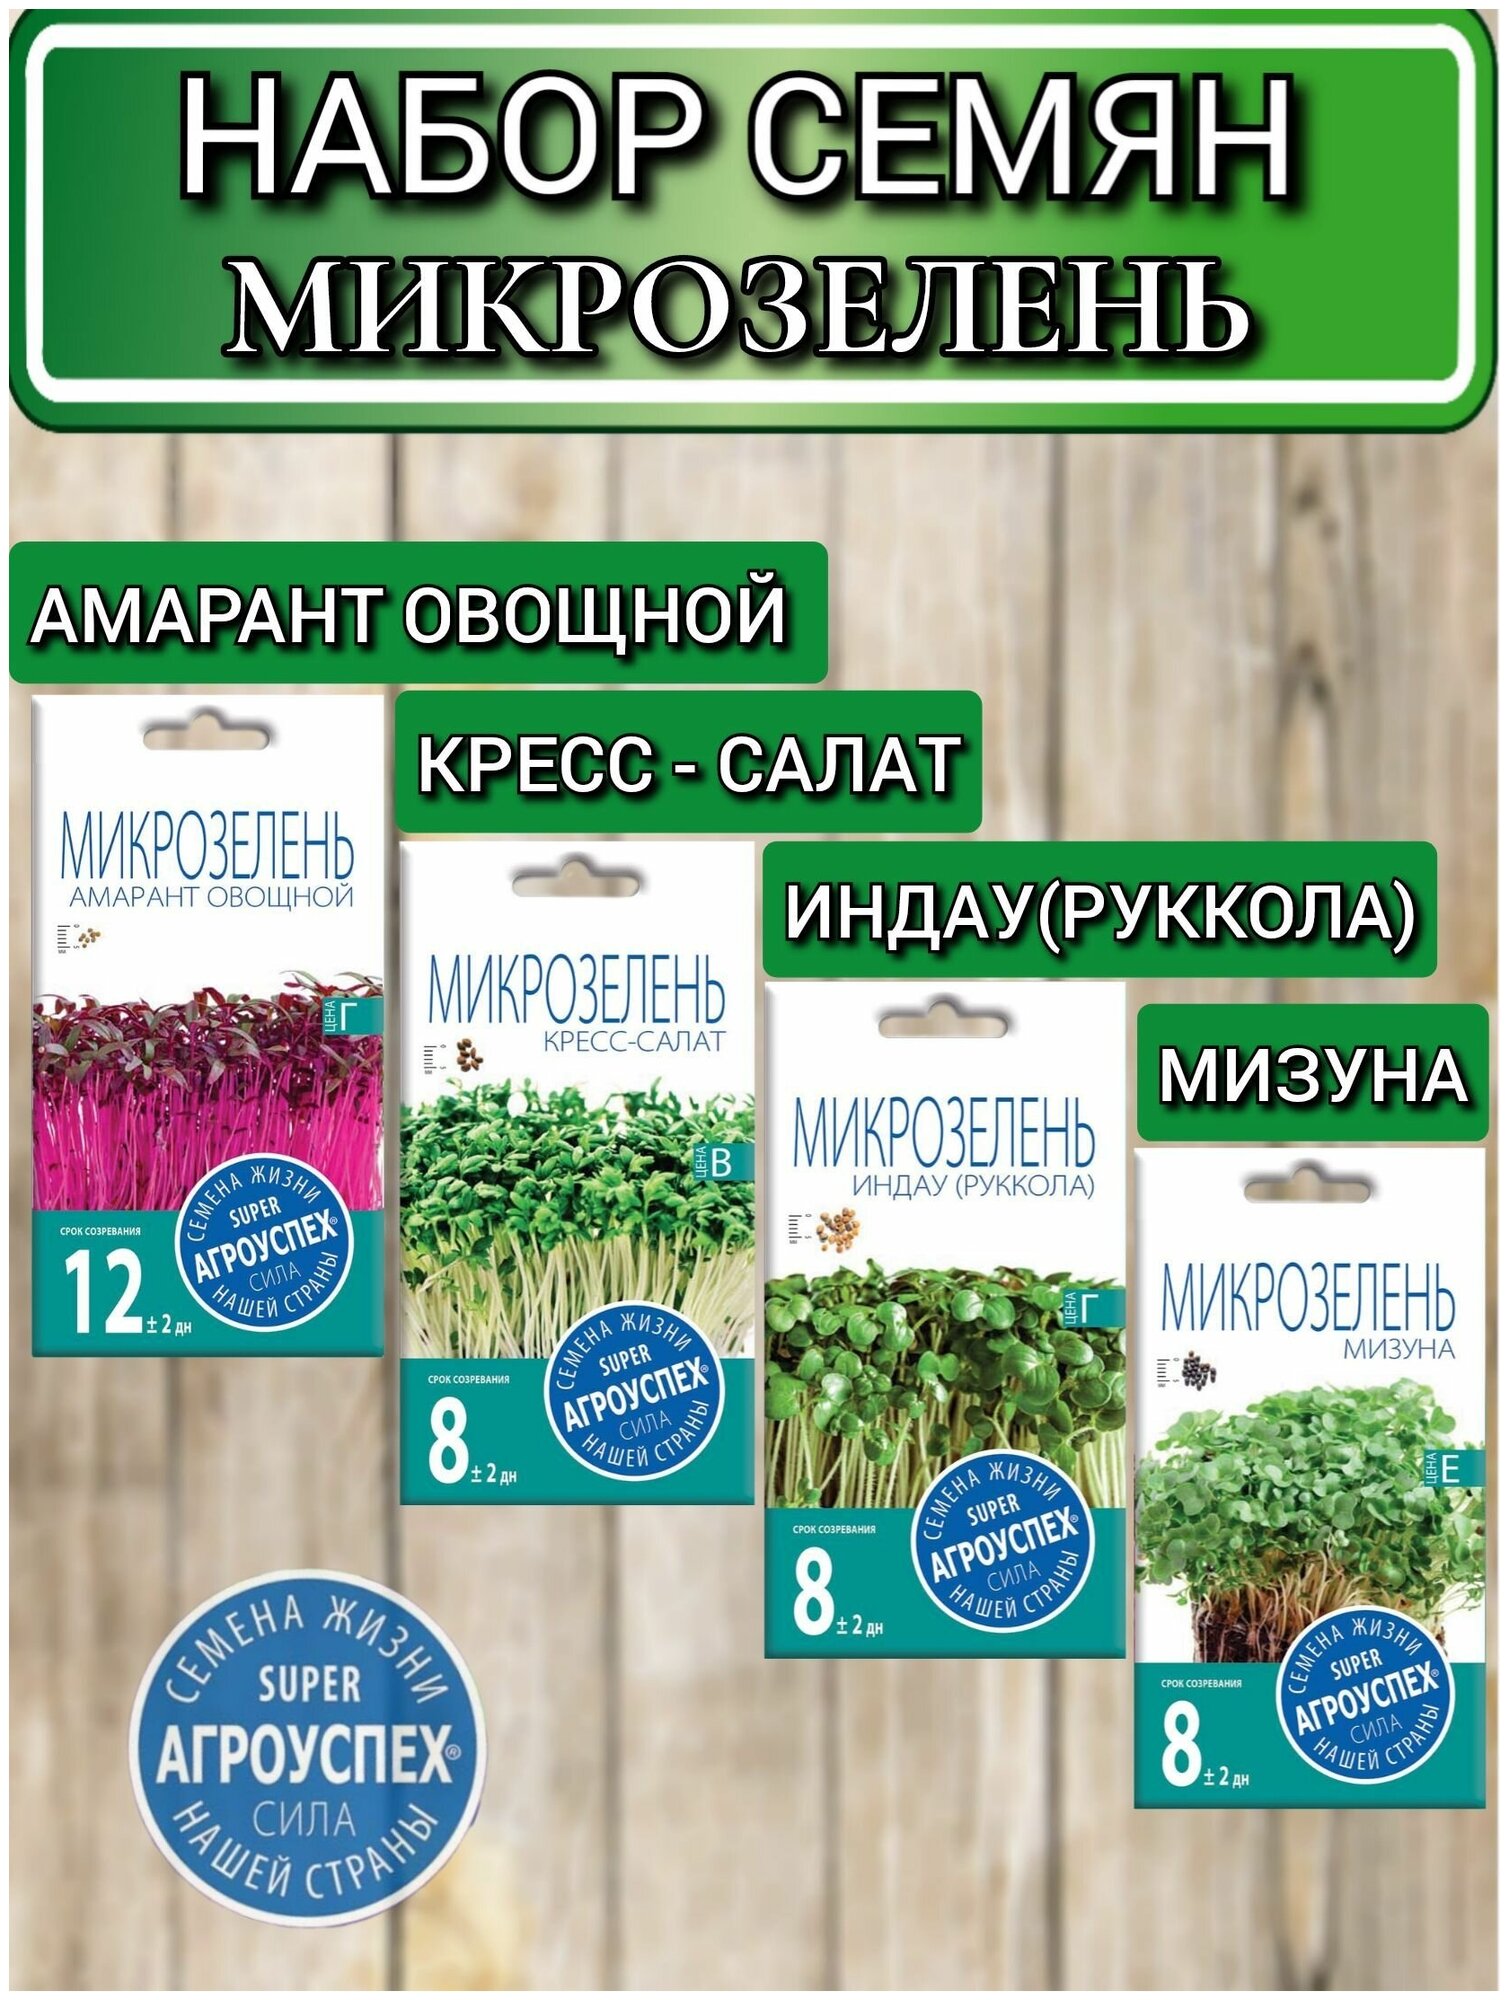 Семена микрозелень: Амарант овощной, Кресс-салат, Руккола и Мизуна